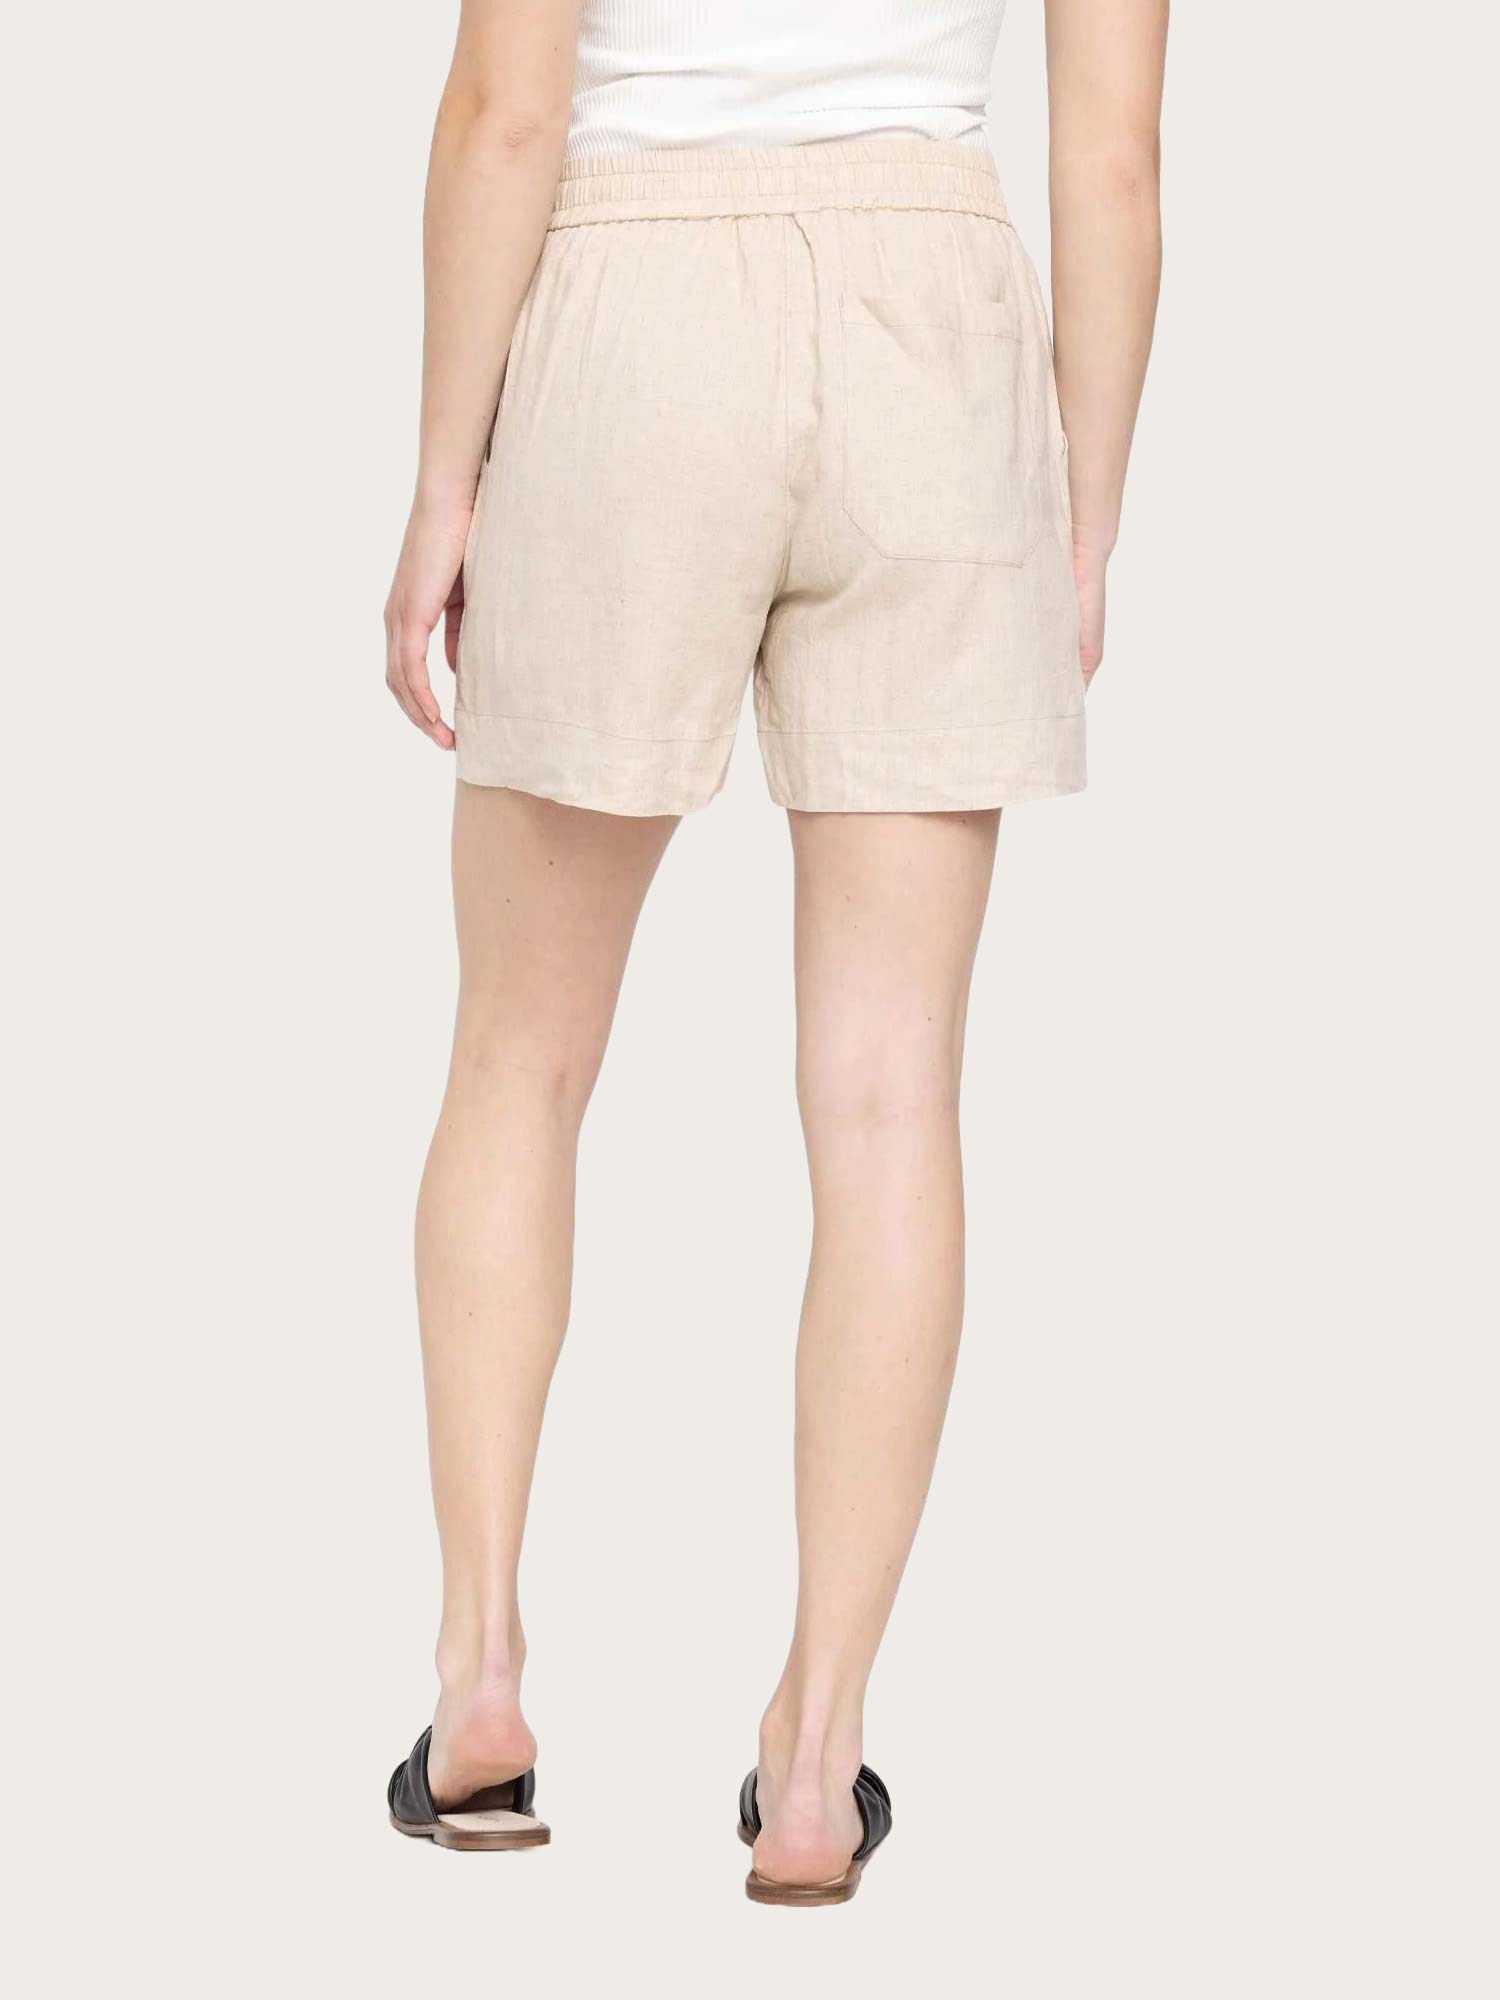 LineaFV Shorts 763 - Natural